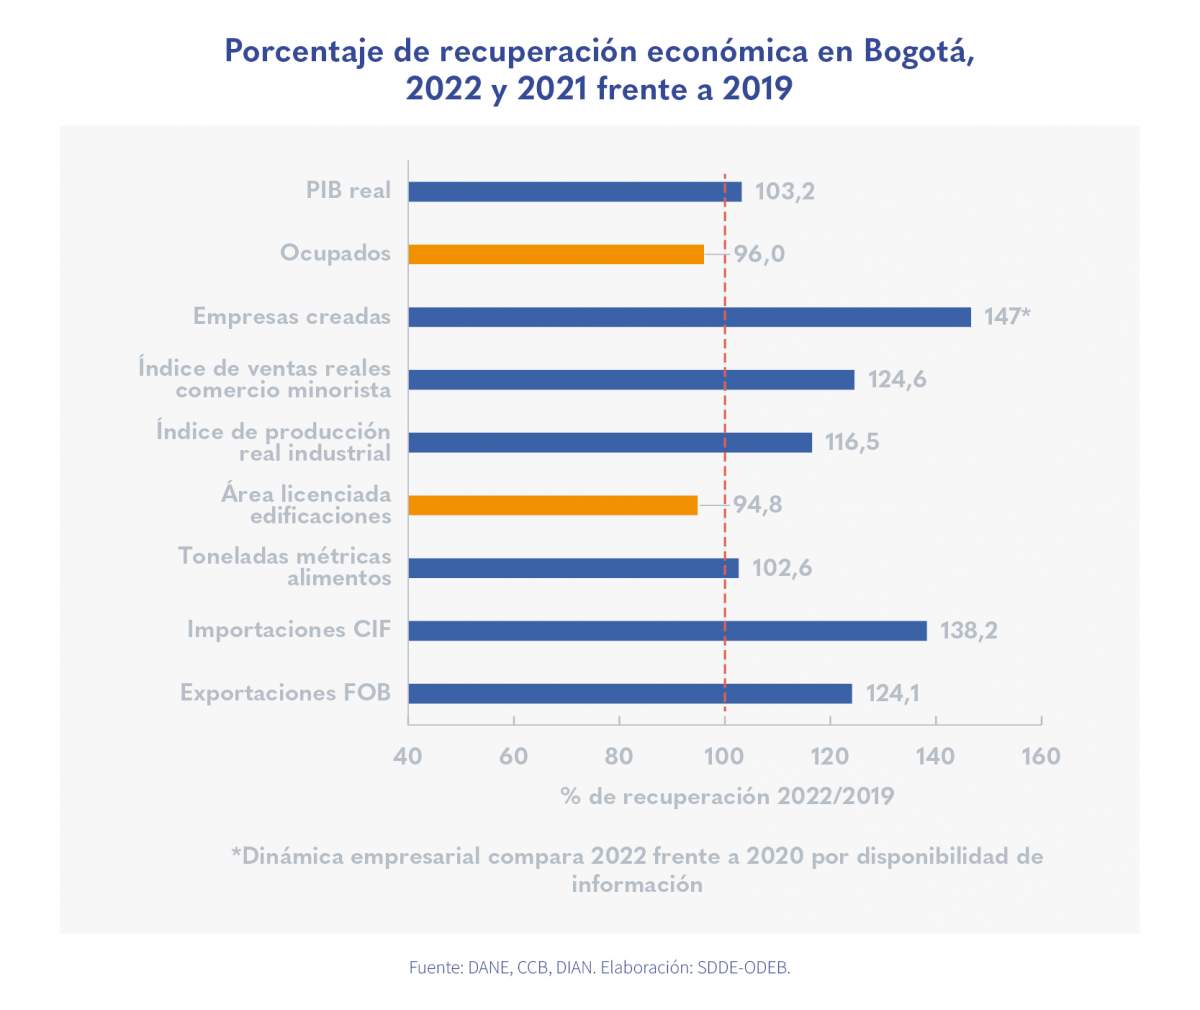 Así va la reactivación y crecimiento económico en Bogotá